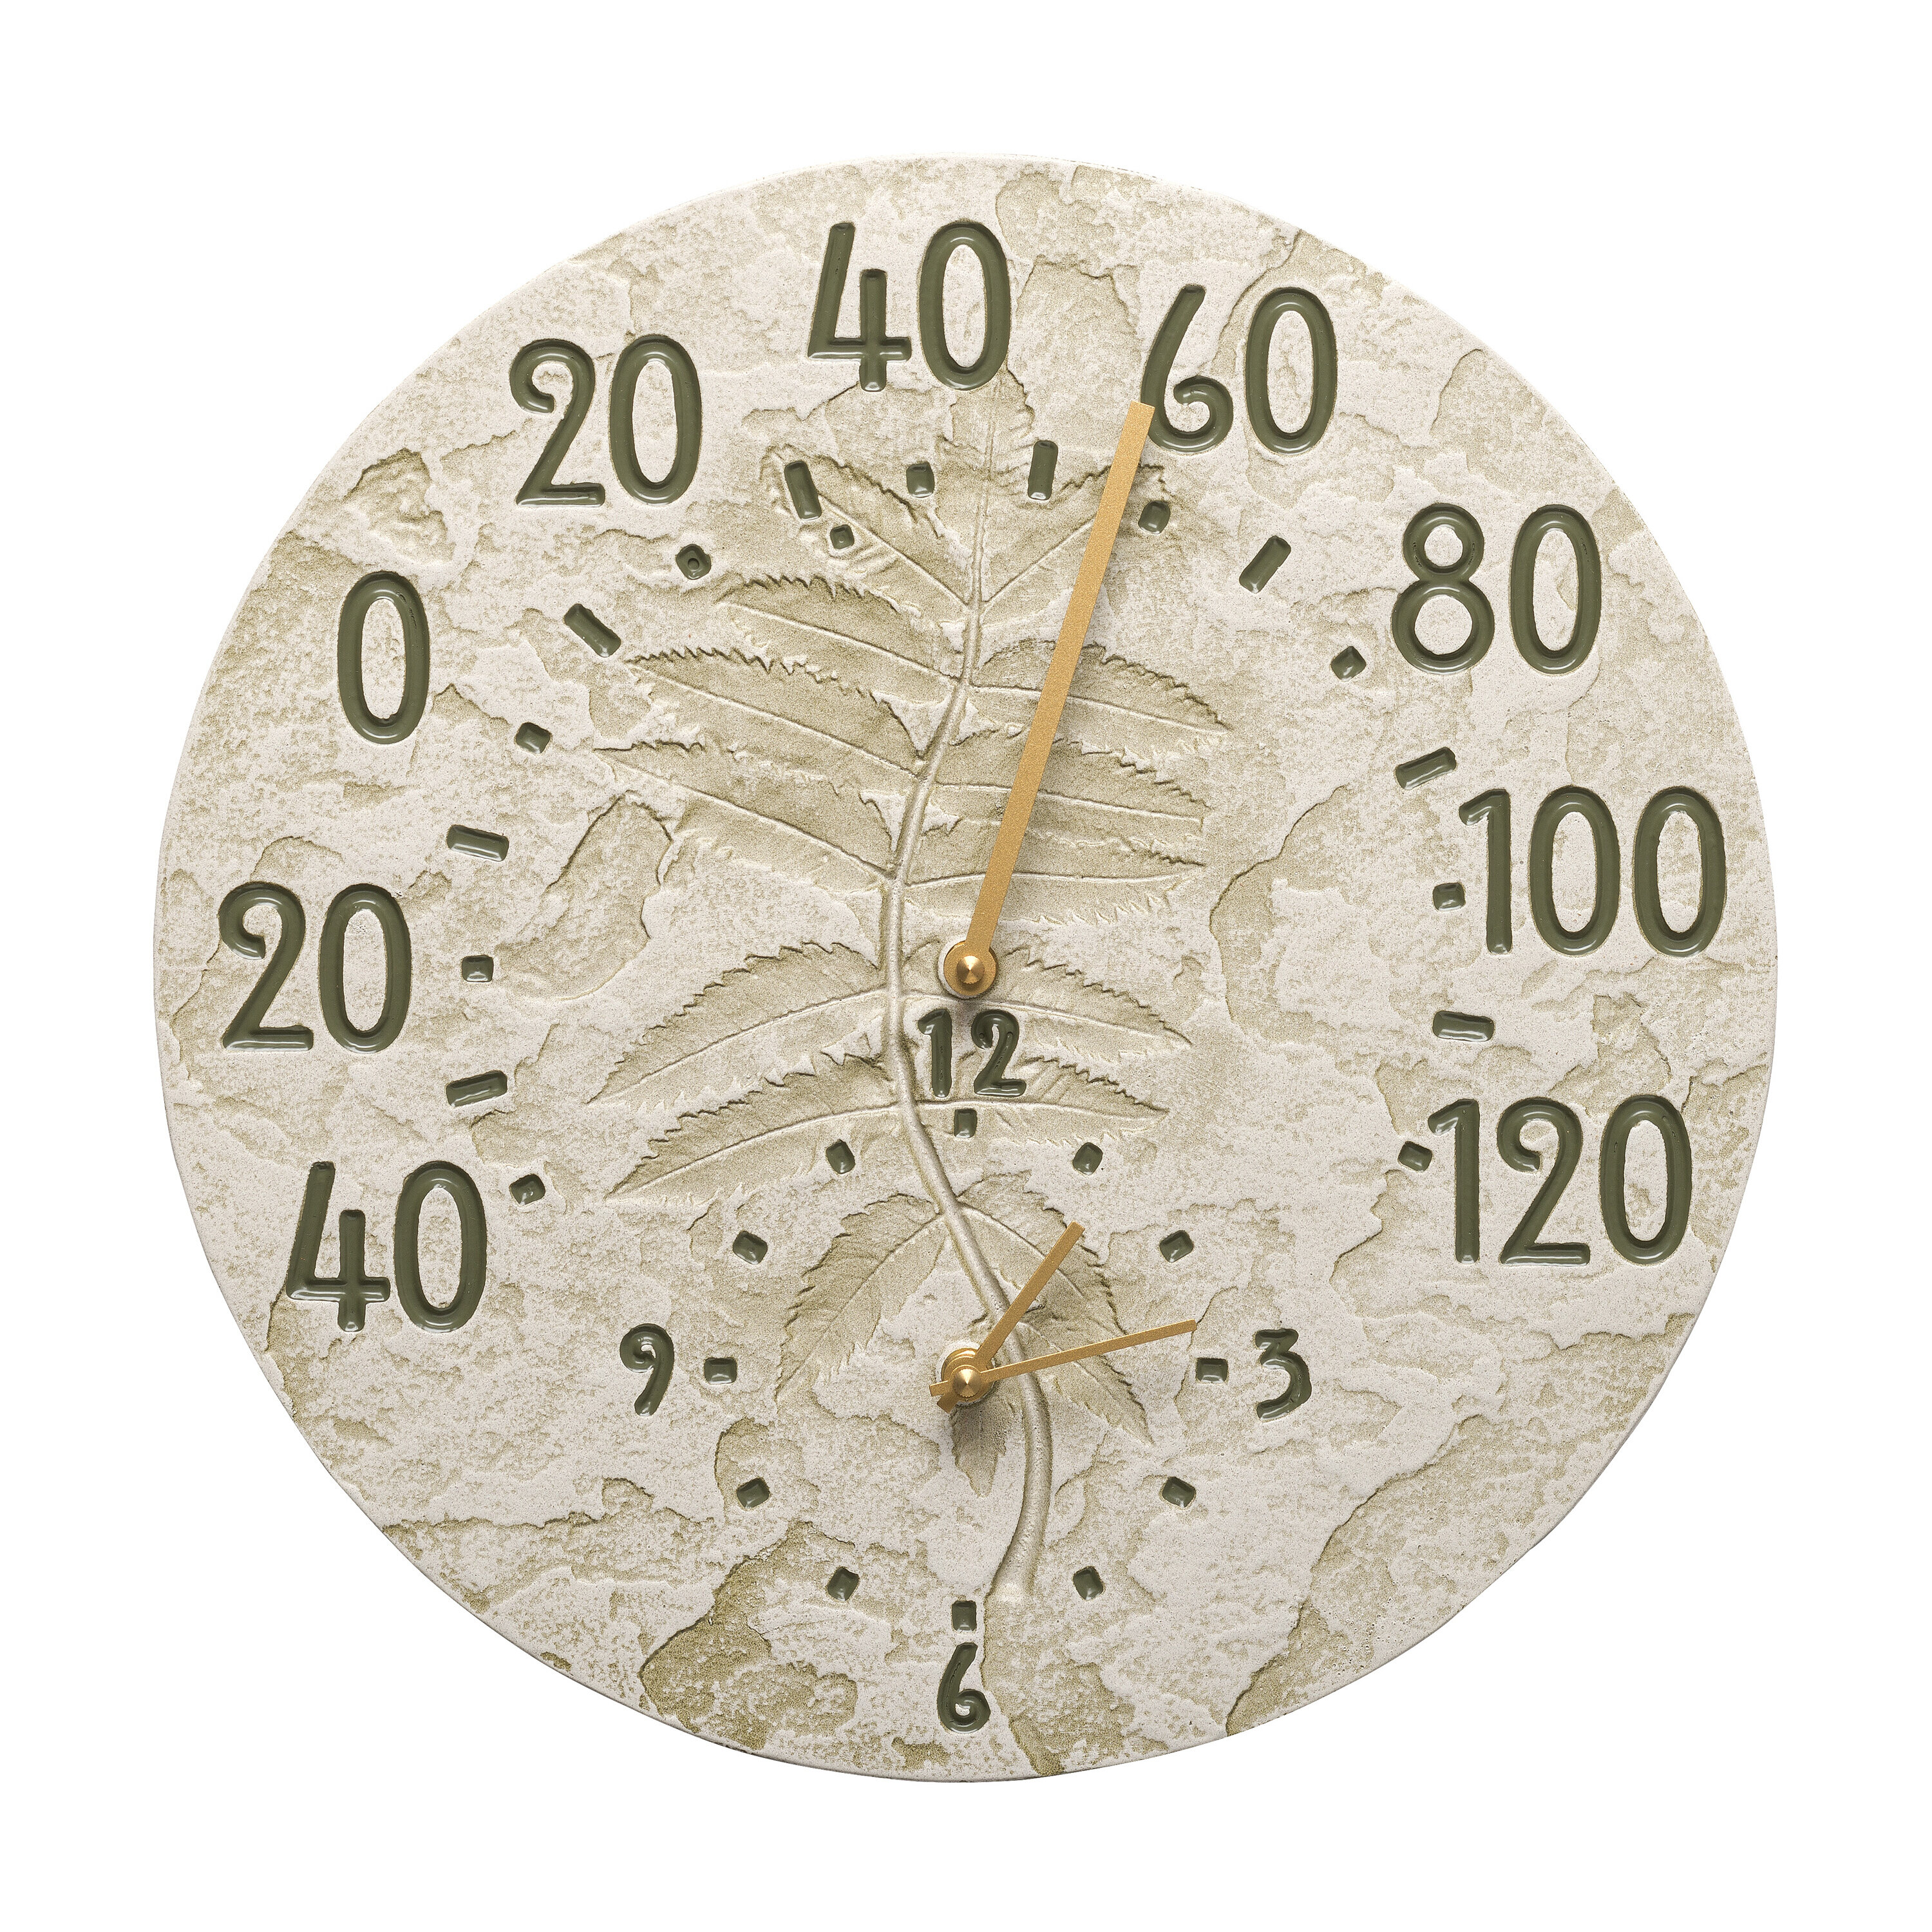 12 Inch Indoor Outdoor Clock Thermometer Combo Waterproof Wall